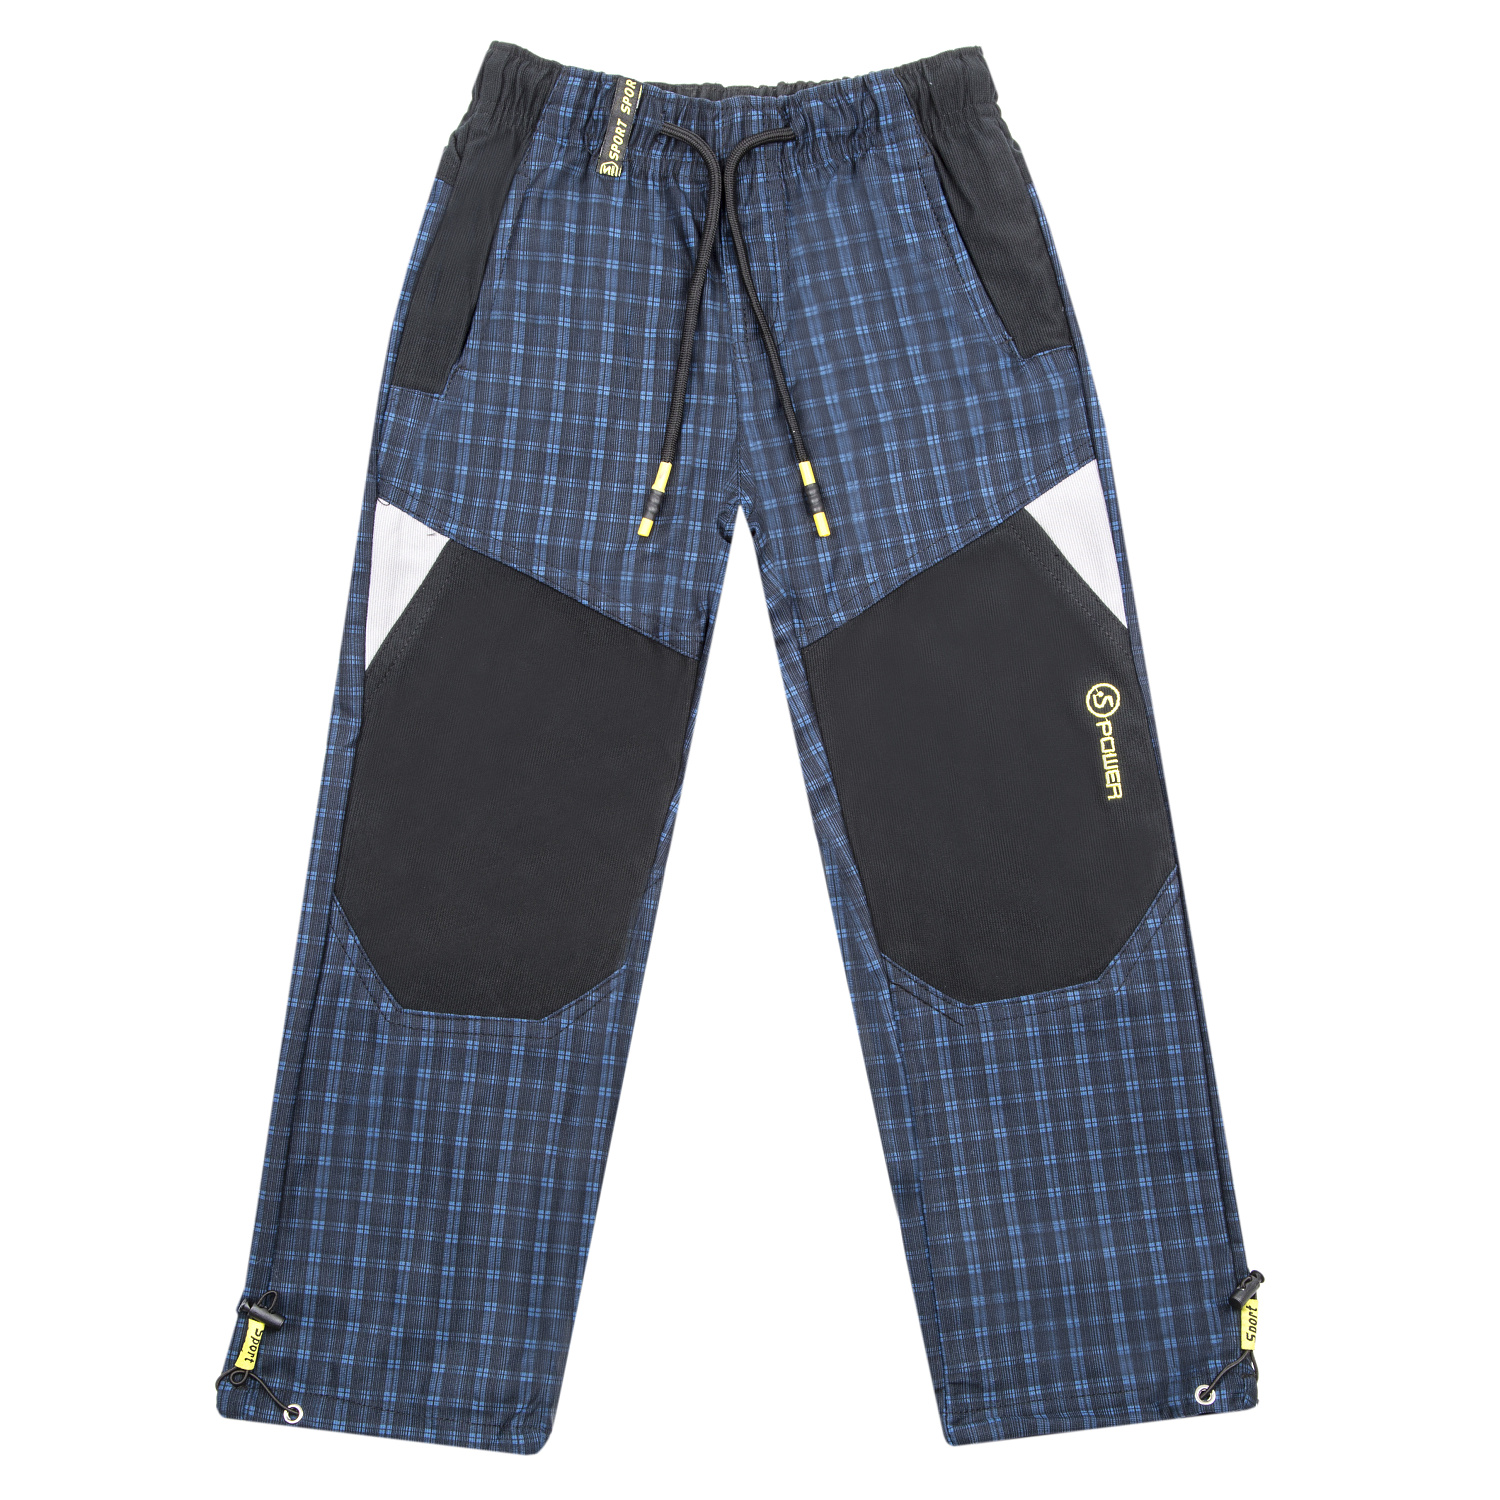 Chlapecké outdoorové kalhoty - GRACE B-84265, modrá Barva: Modrá, Velikost: 116